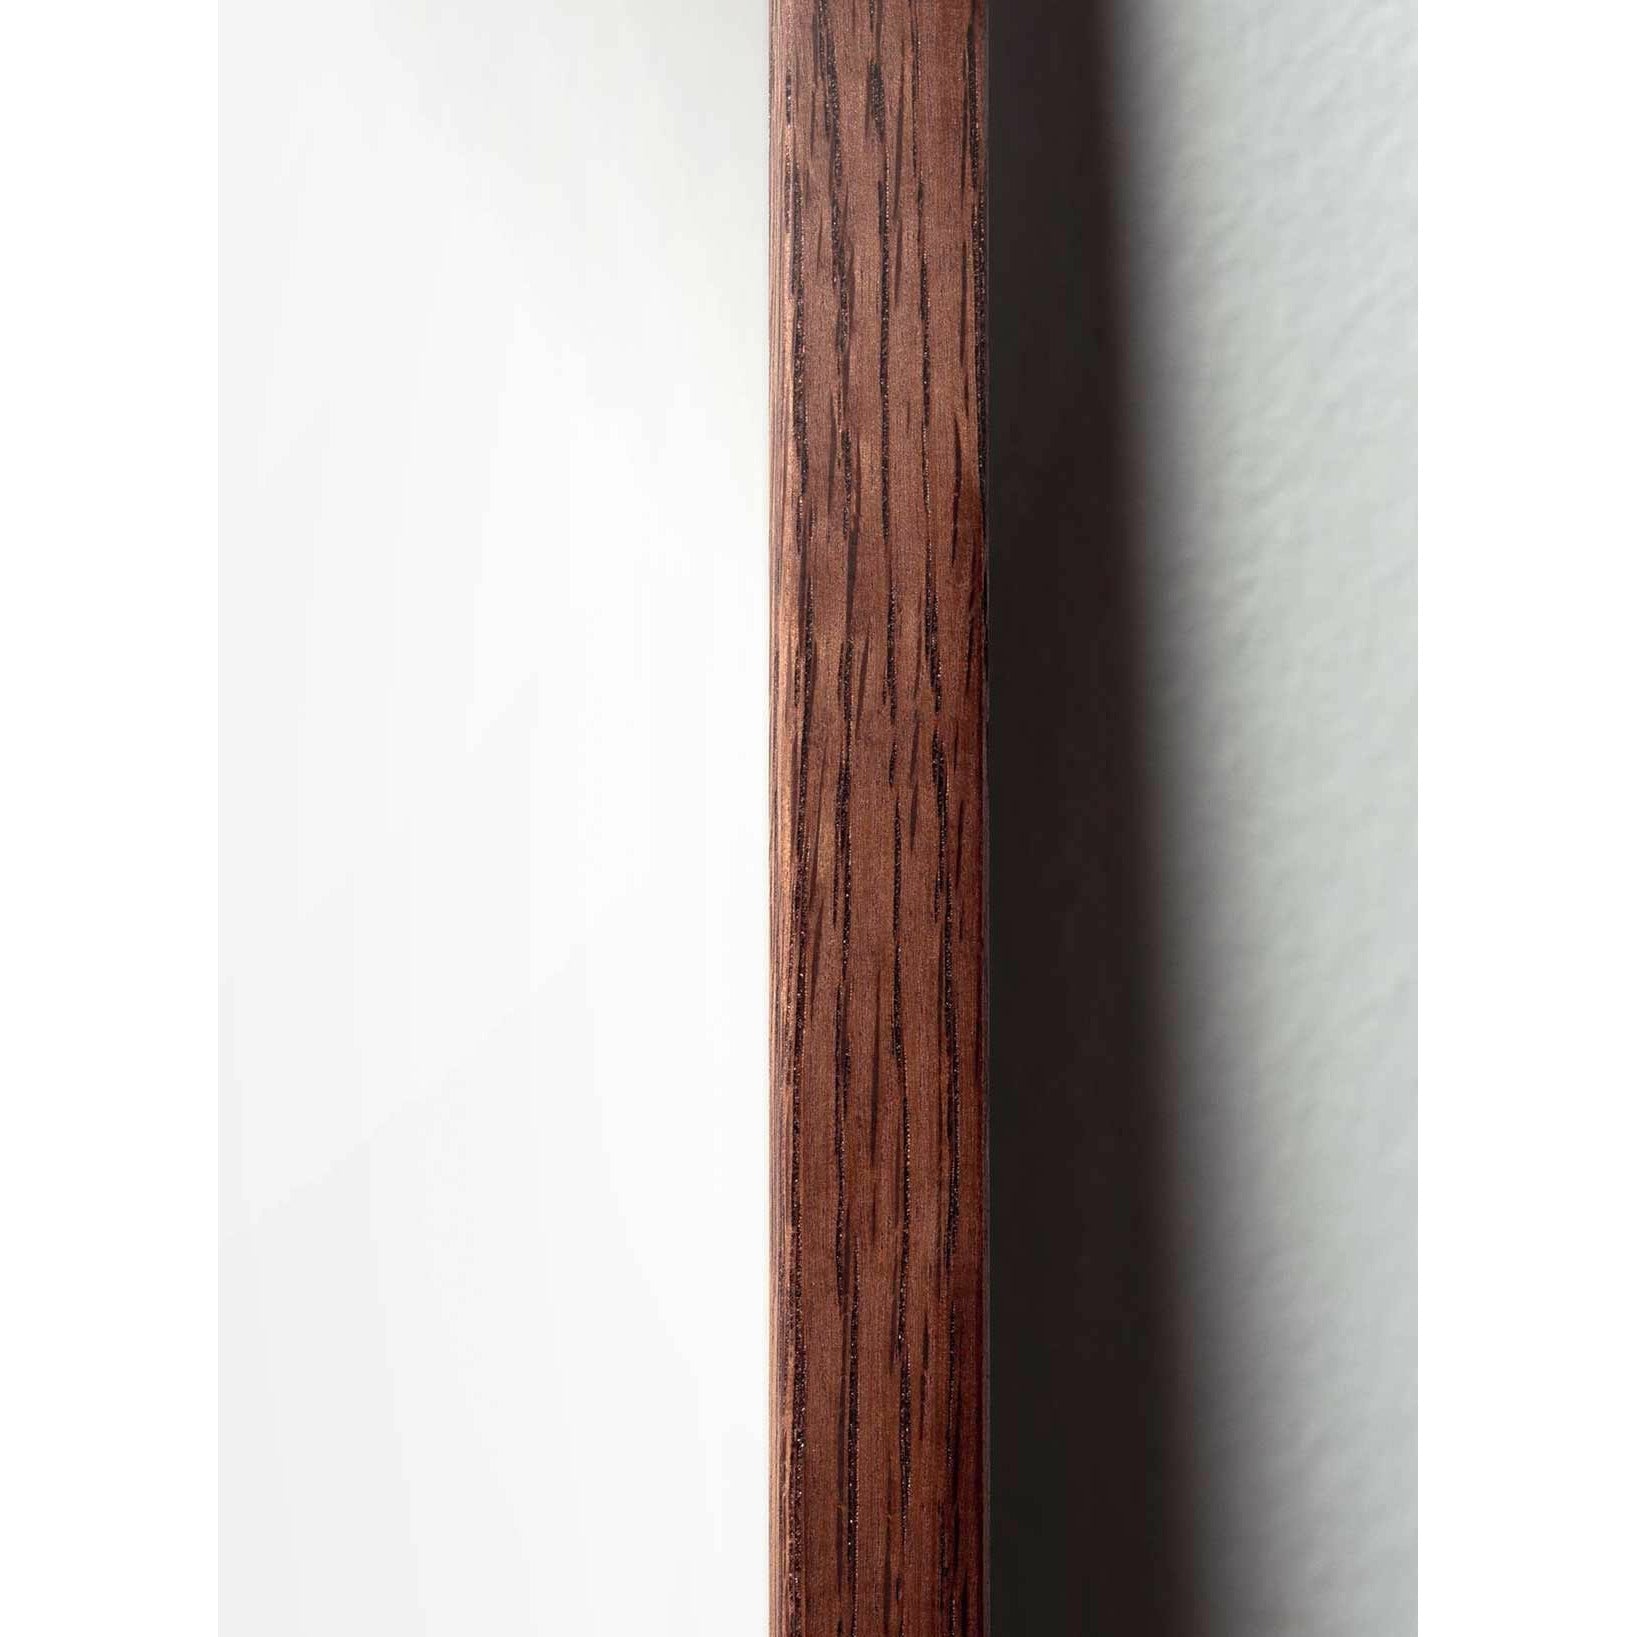 Pomysły plakat linii jaj, rama wykonana z ciemnego drewna 50x70 cm, białe tło